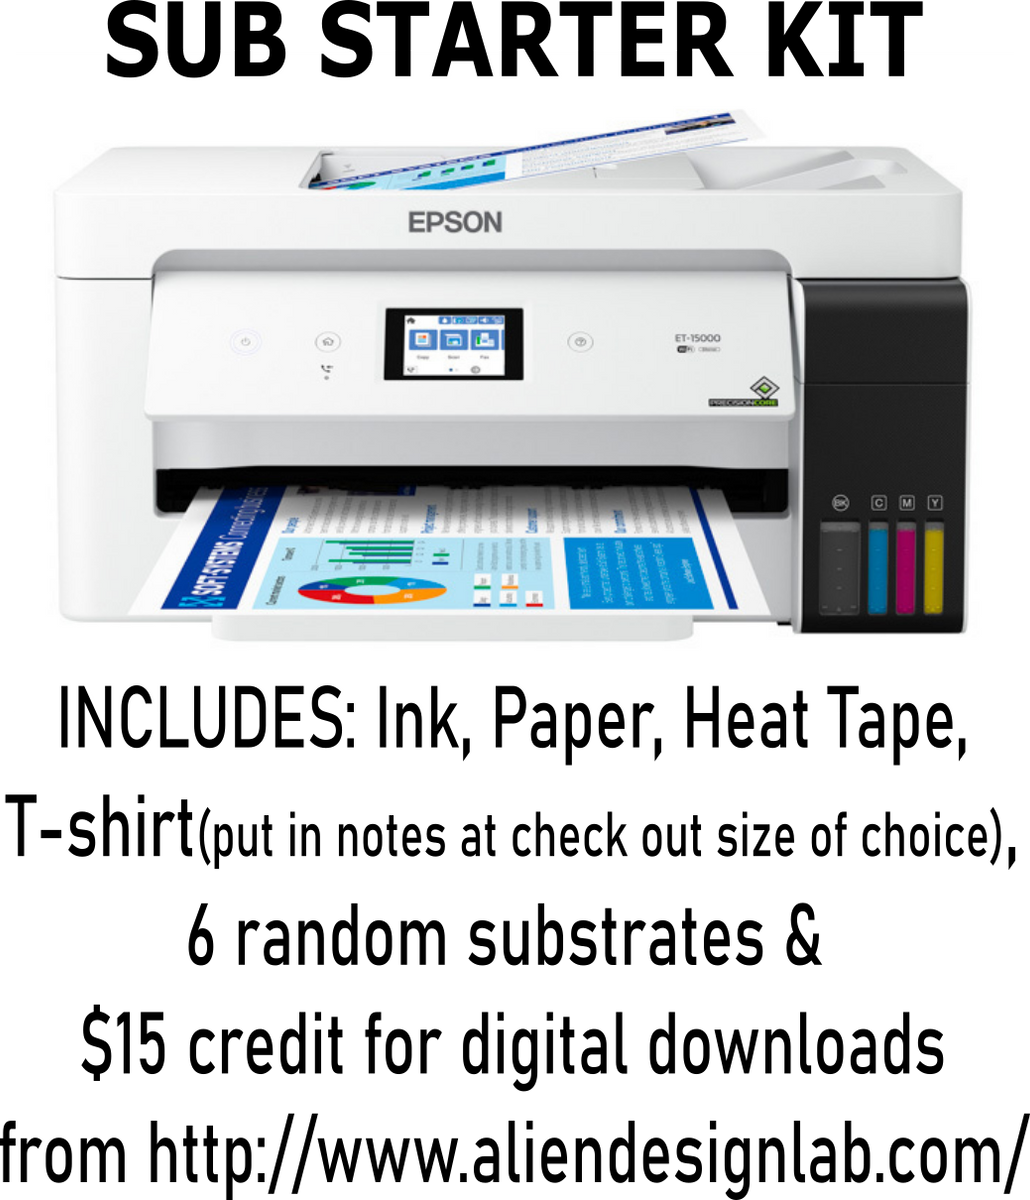 Convertir EPSON EcoTank ET-15000 a Impresora para Sublimación.